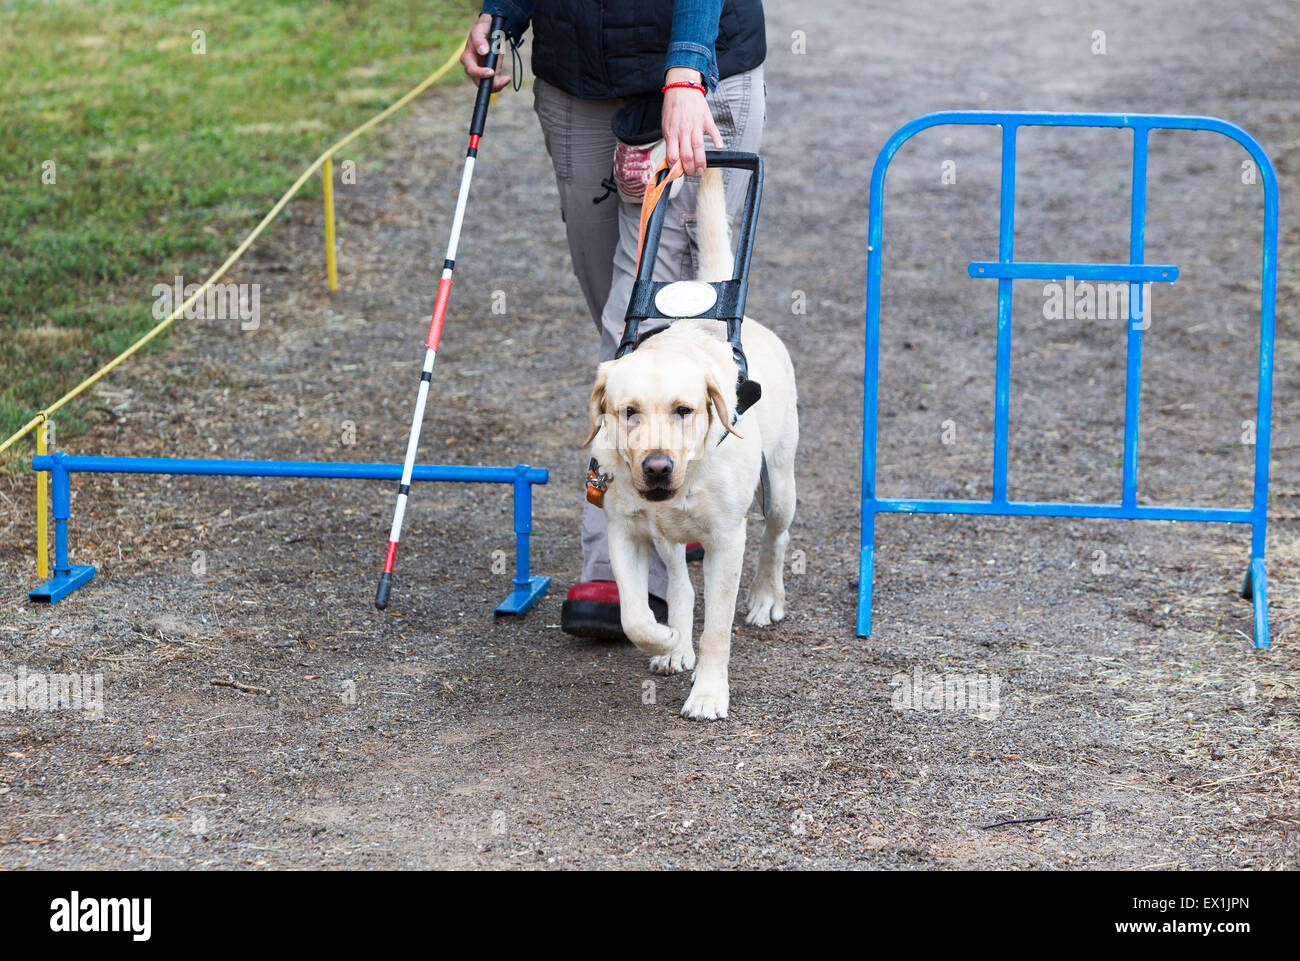 Ein blinder wird von ihrem golden Retriever Hund während des letzten Trainings für den Hund geführt. Die Hunde sind verschiedene tr unterziehen. Stockfoto